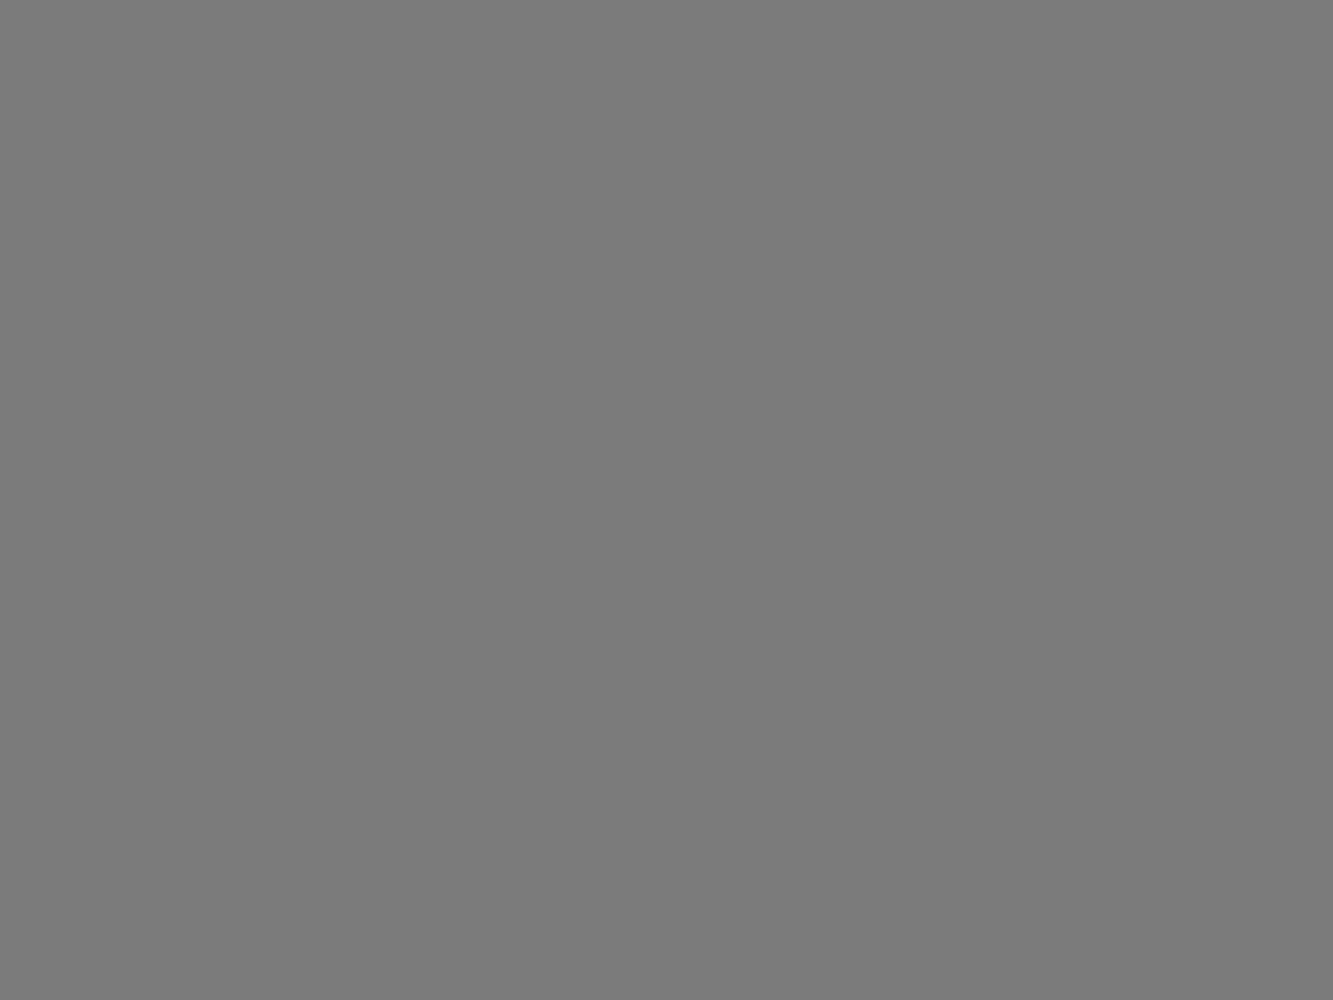 Кинорежиссер Питер Устинов в гостях у семьи художника Ильи Глазунова. Справа налево: Илья Глазунов, Питер Устинов, Нина Глазунова с детьми Ваней и Верой. 1981 год. Фотография: Валентин Мастюков / ТАСС